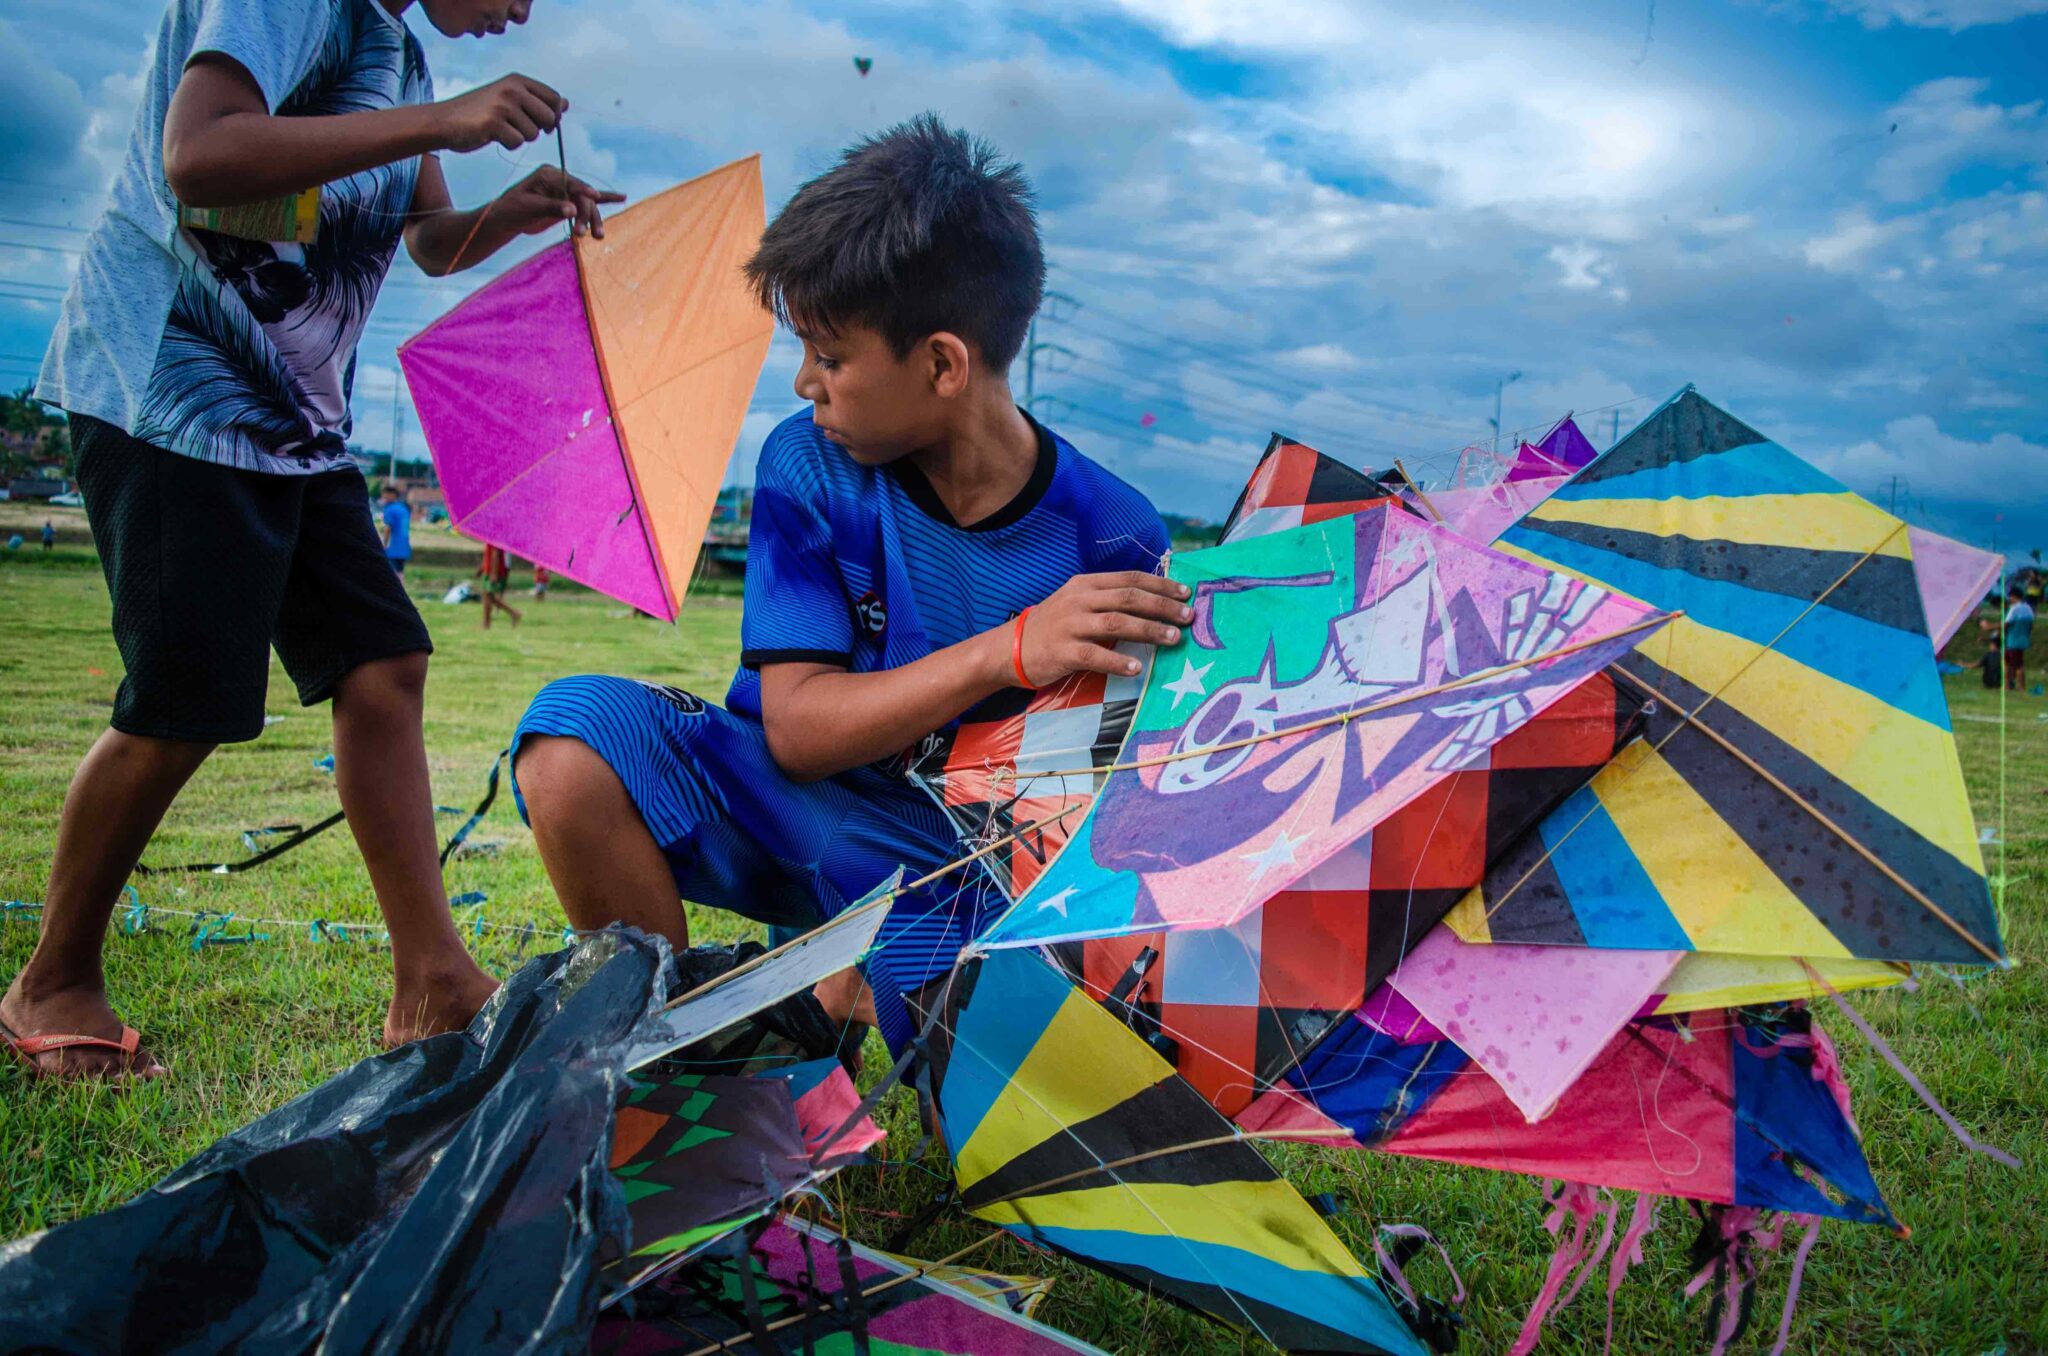 Fotografias de crianças e adolescentes da periferia de Manaus se transformam em exposição